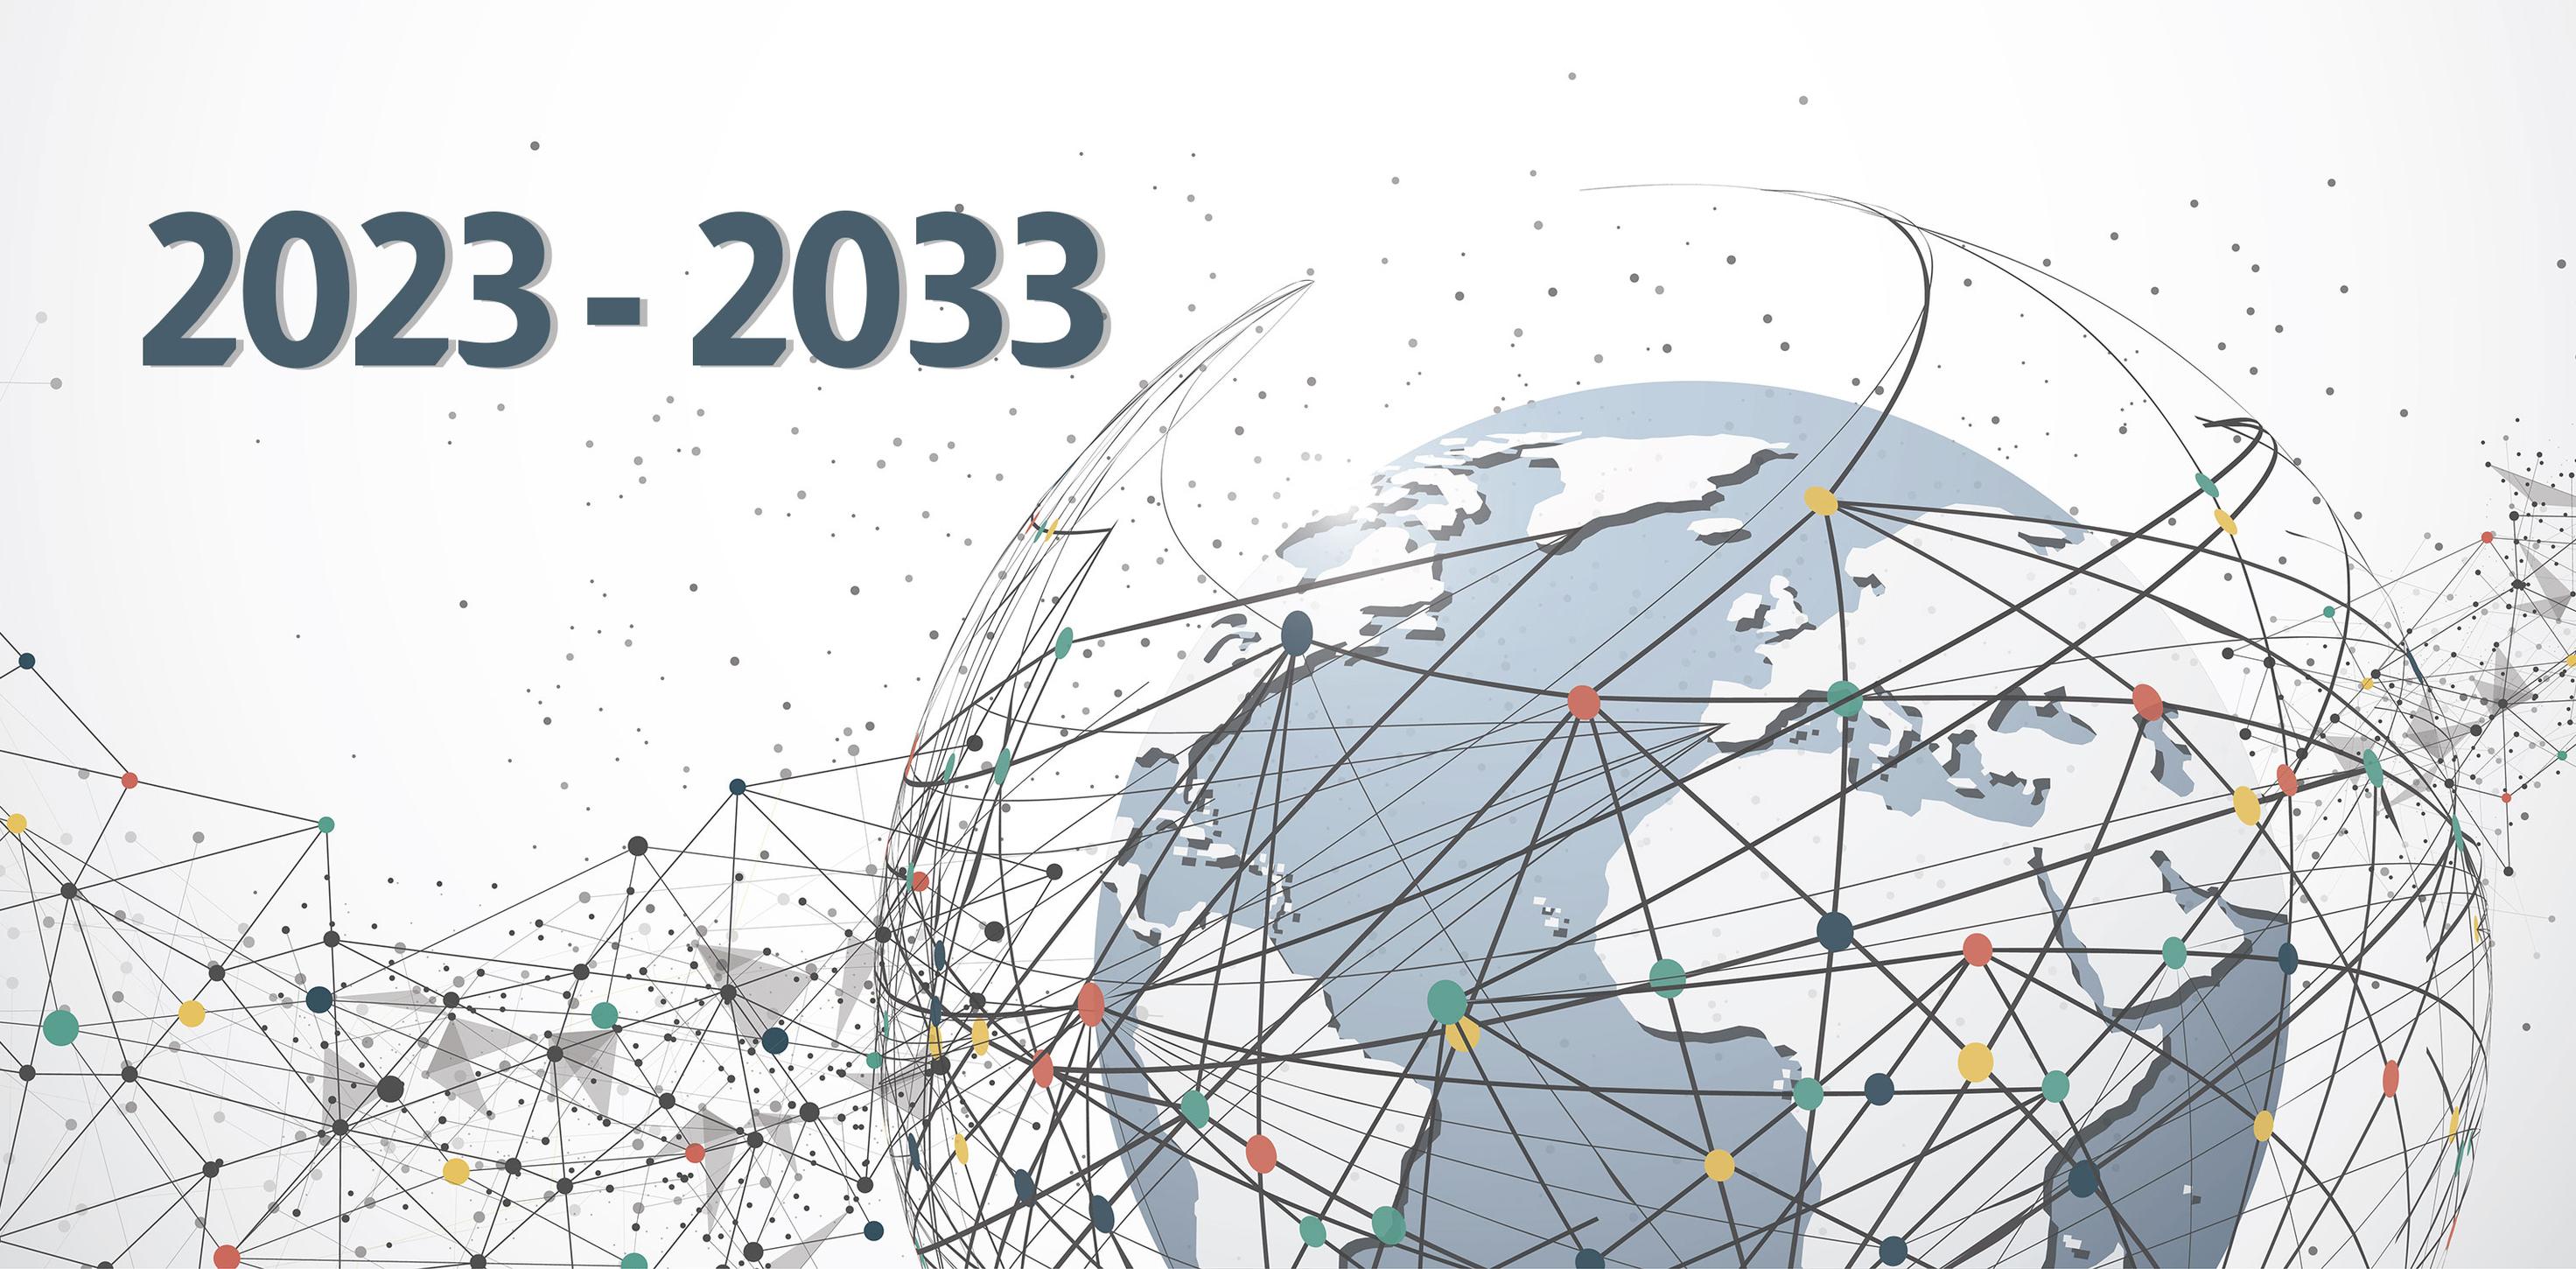 خريطة المخاطر العالمية المتوقعة بين عامي 2023 و2033